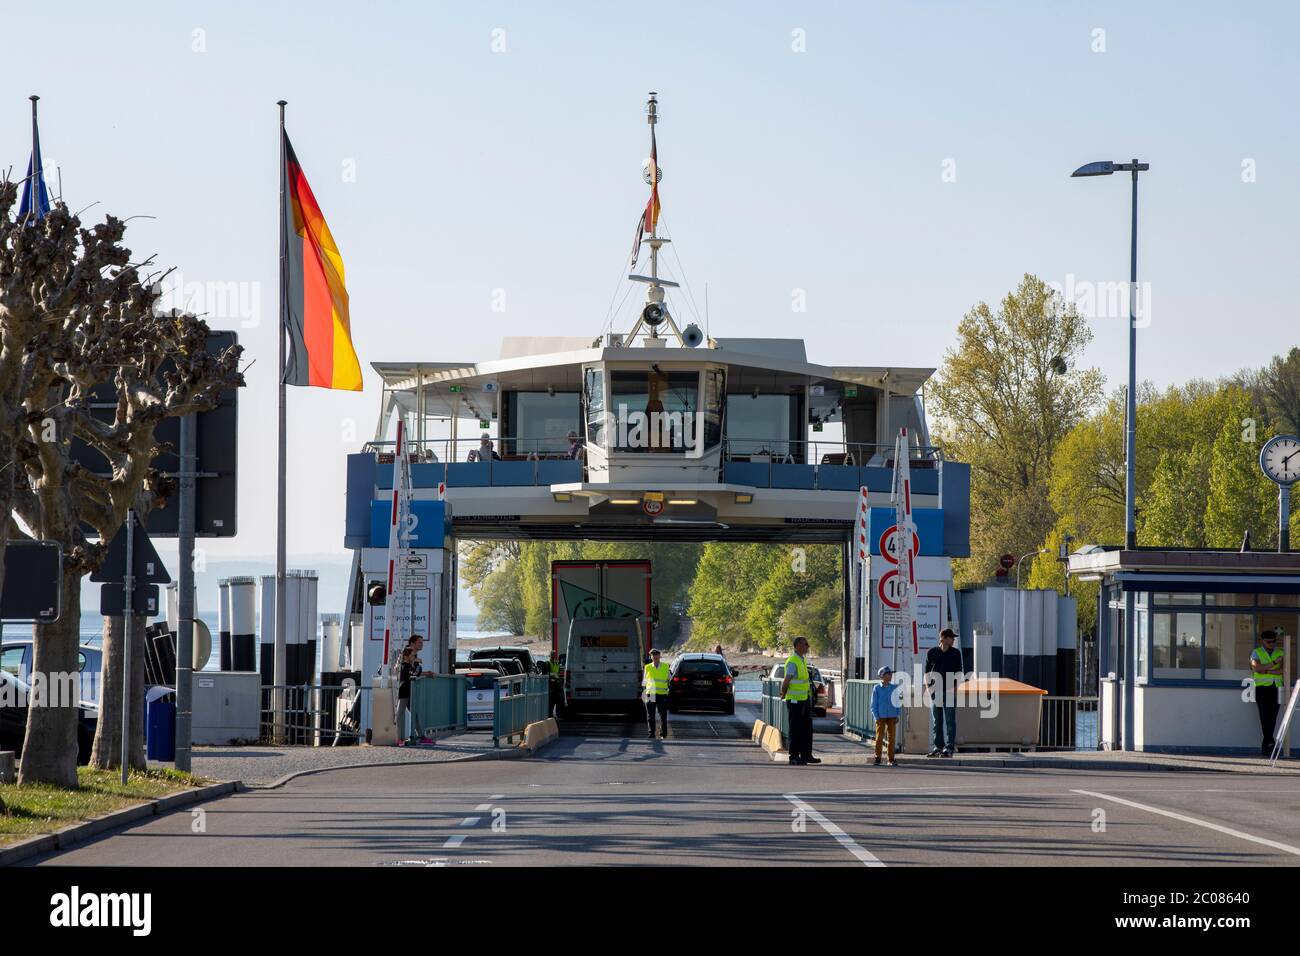 Corona-Pandemie: Einbruch der Fahrgastzahlen im wichtigen Fährverkehr Konstanz-Meersburg. Meersburg, 22.04.2020 Foto de stock